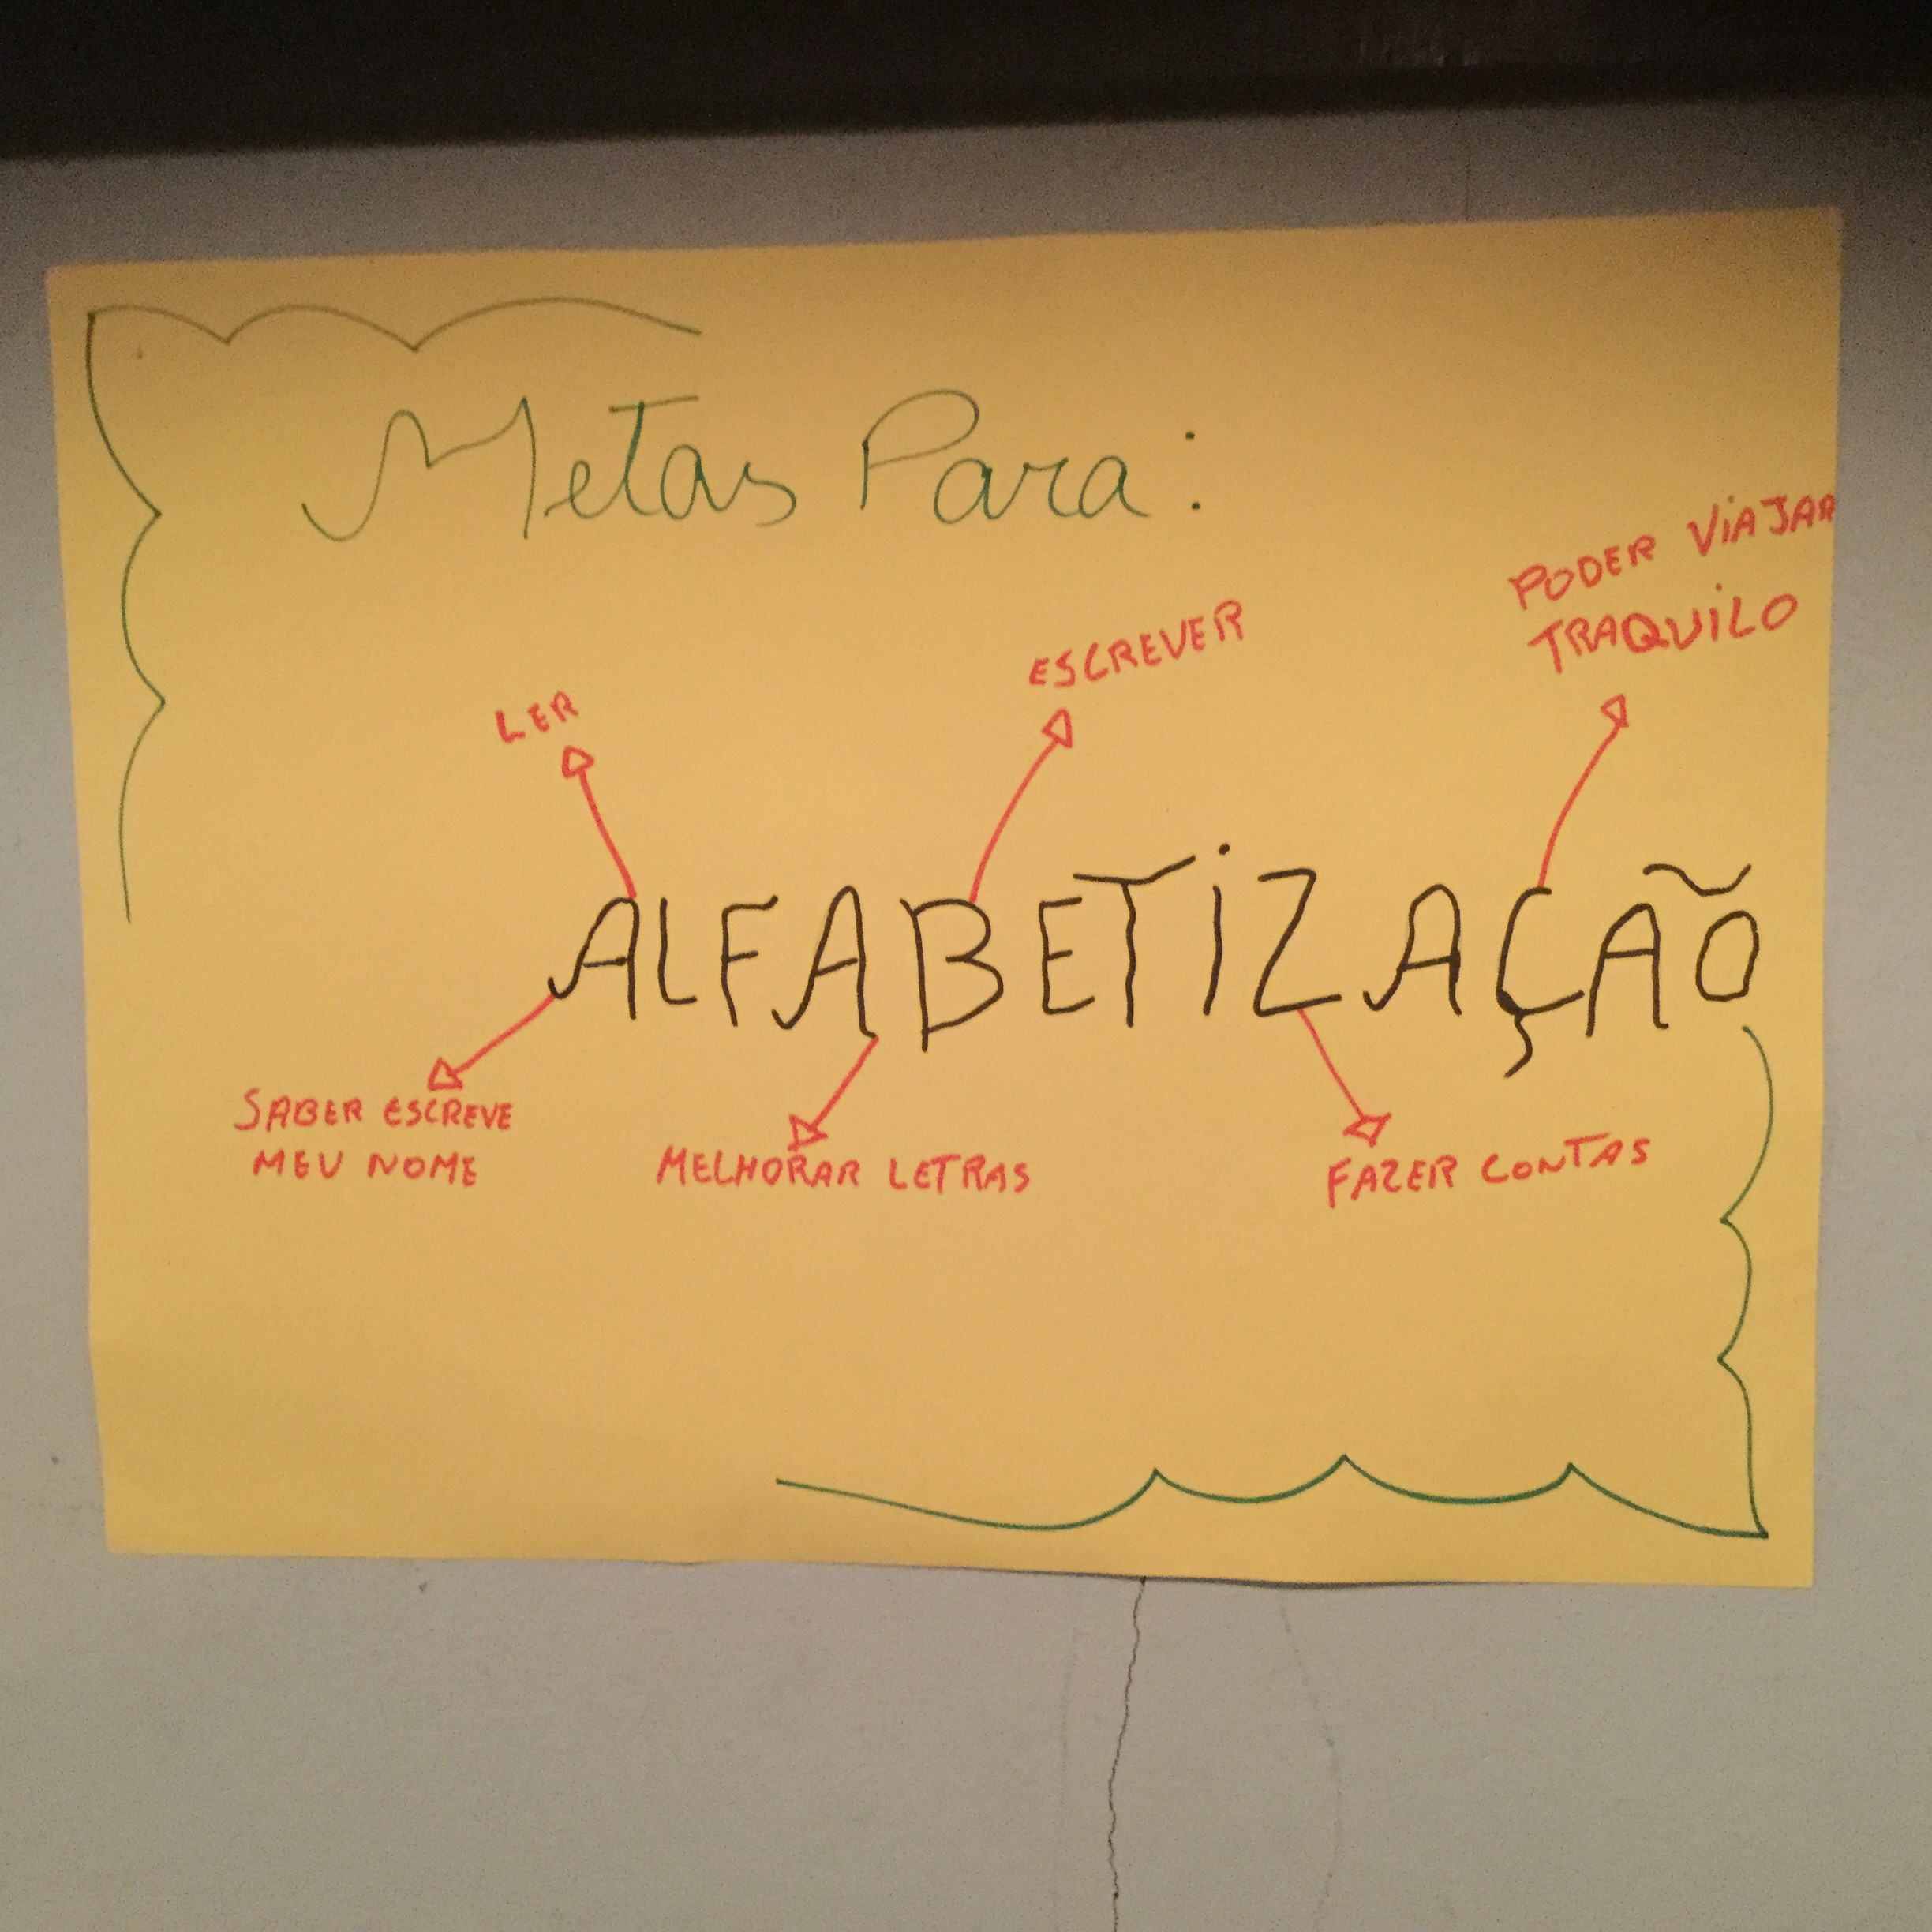 Cartaz elaborado pelos educandos da turma da monitora Marta Monteiro.